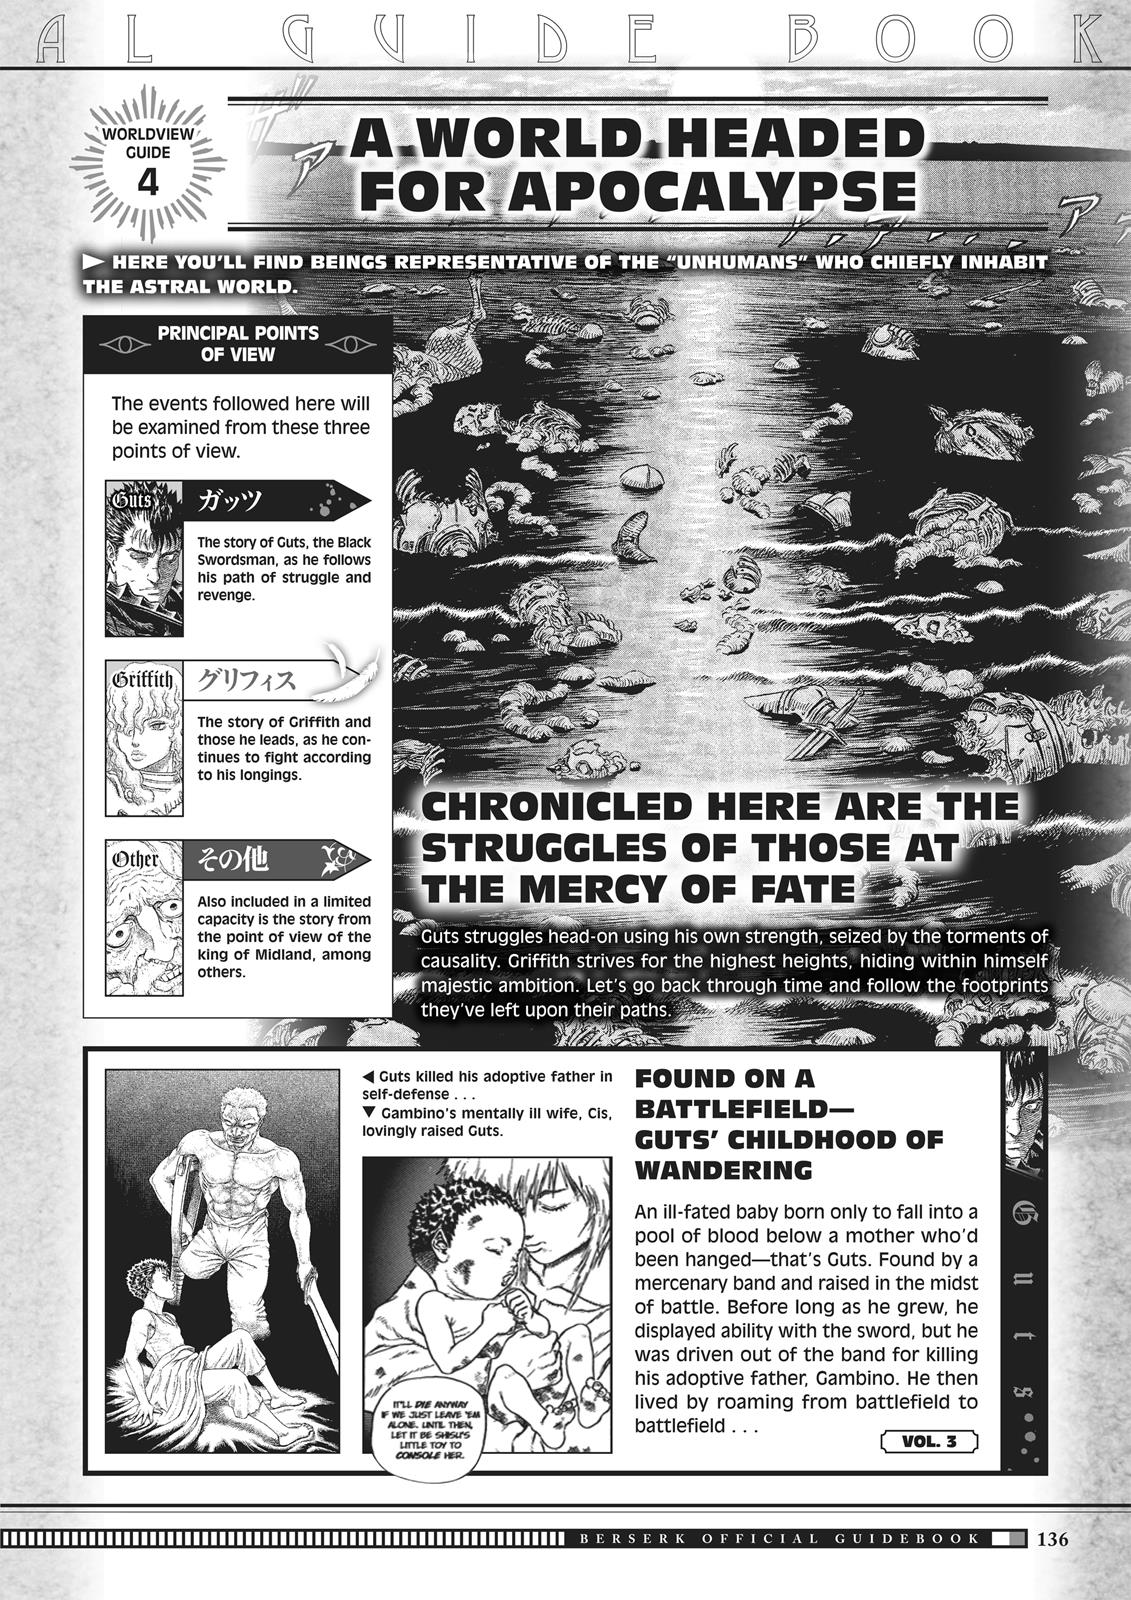 Berserk Manga Chapter 350.5 image 134